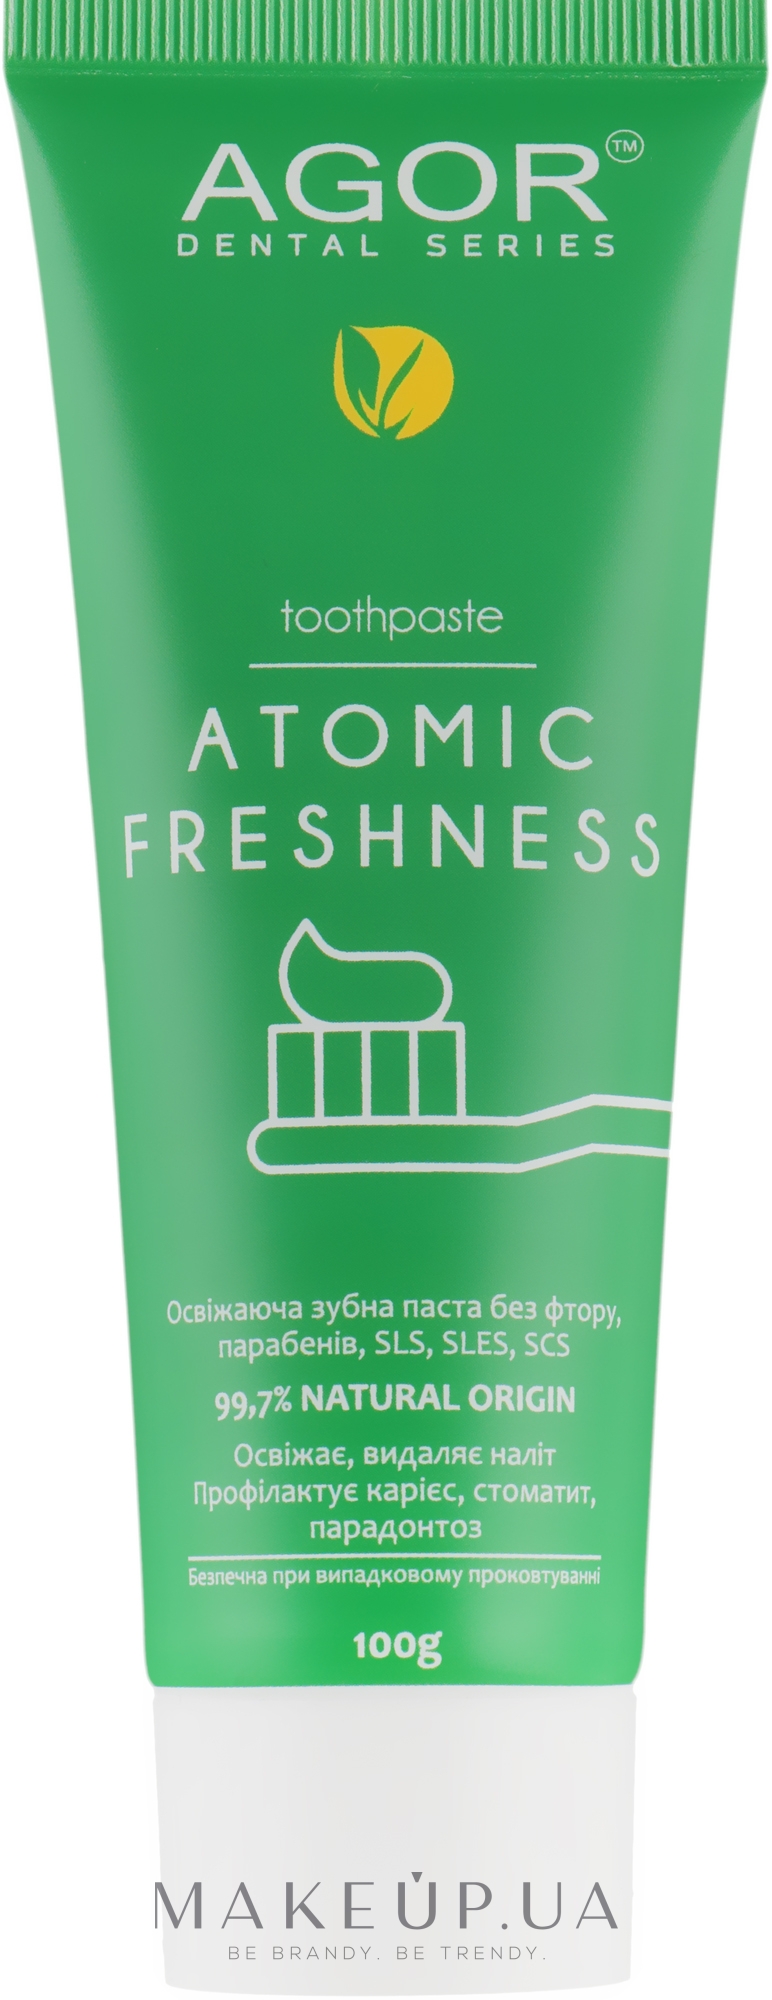 Освіжальна зубна паста - Agor Atomic Freshness — фото 100g